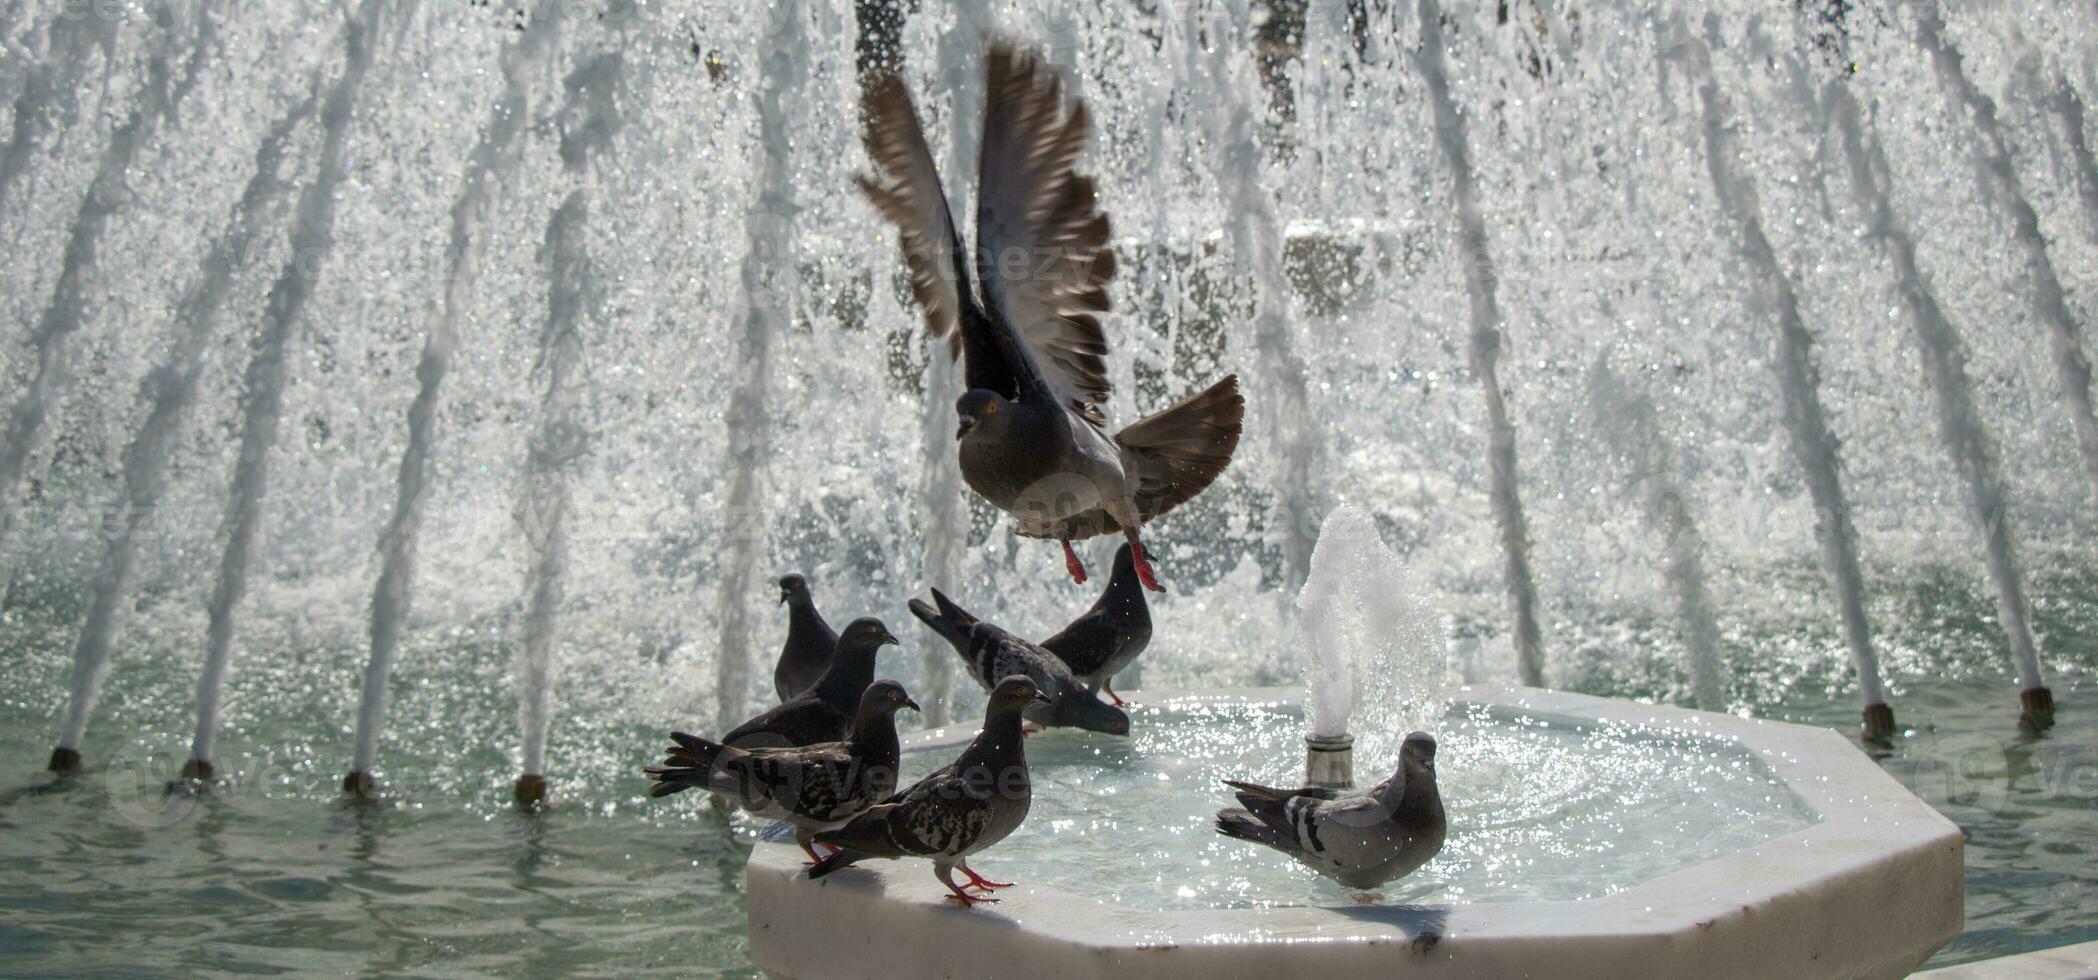 pigeons de la ville au bord de la fontaine photo